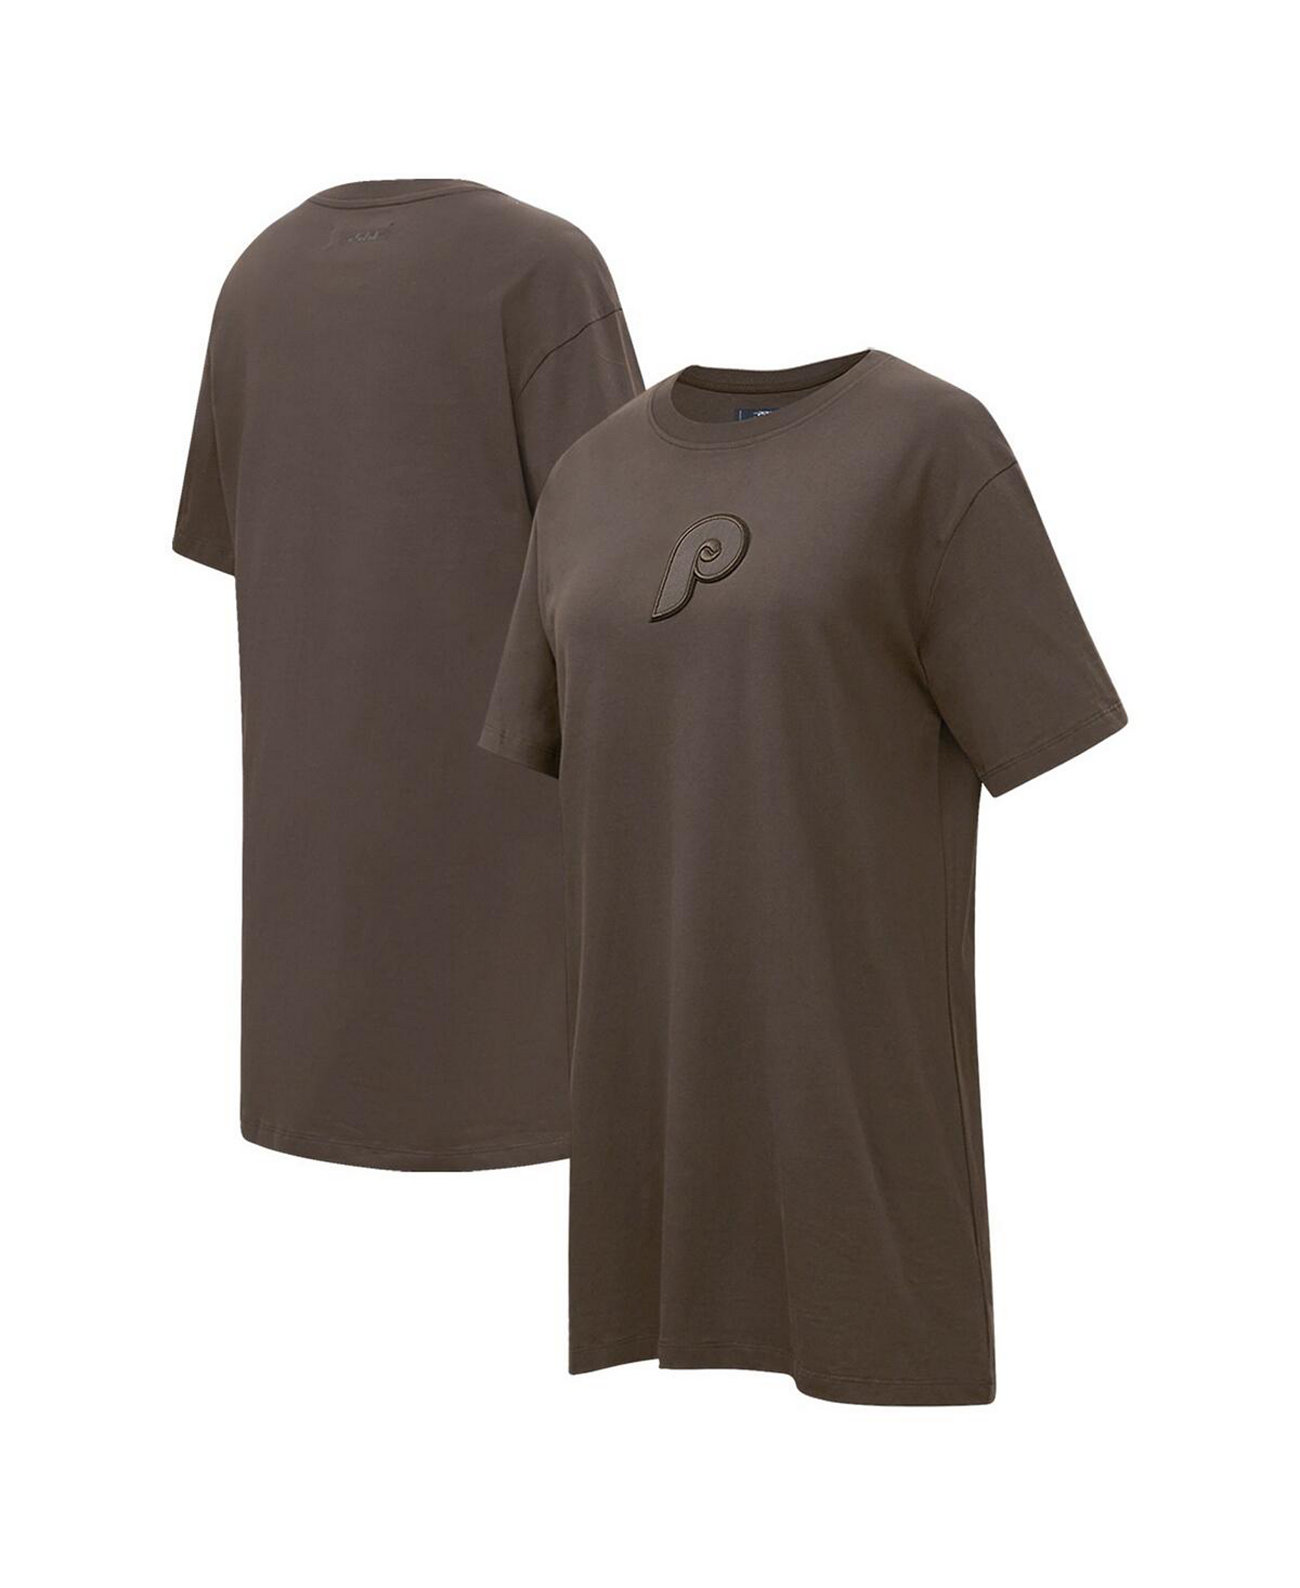 Женское коричневое платье-футболка нейтрального цвета Philadelphia Phillies Pro Standard